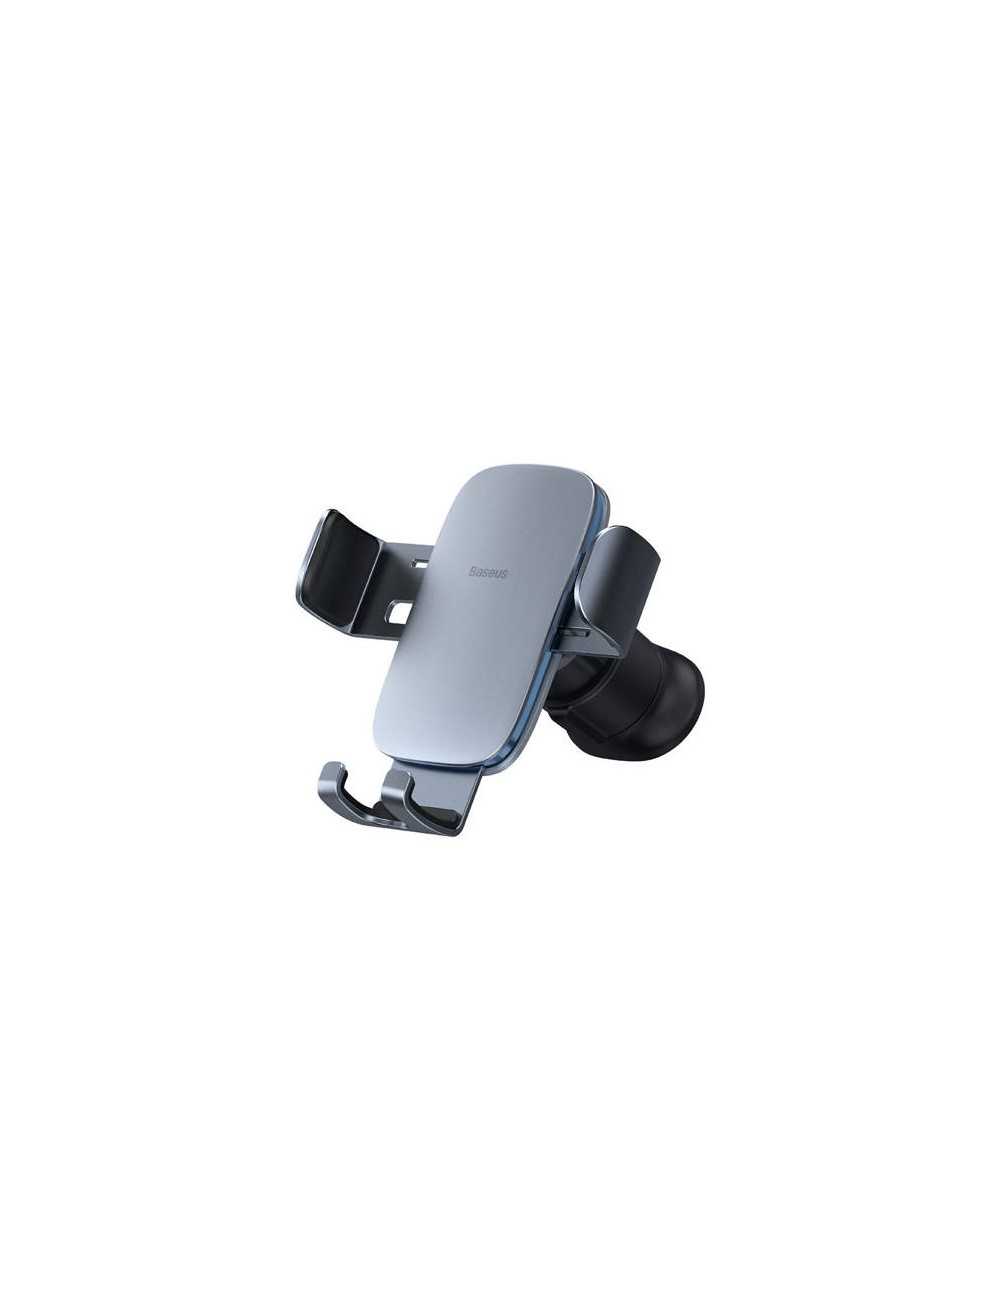 Aukey HD-C48 360° Car Air Vent Phone Holder - Black